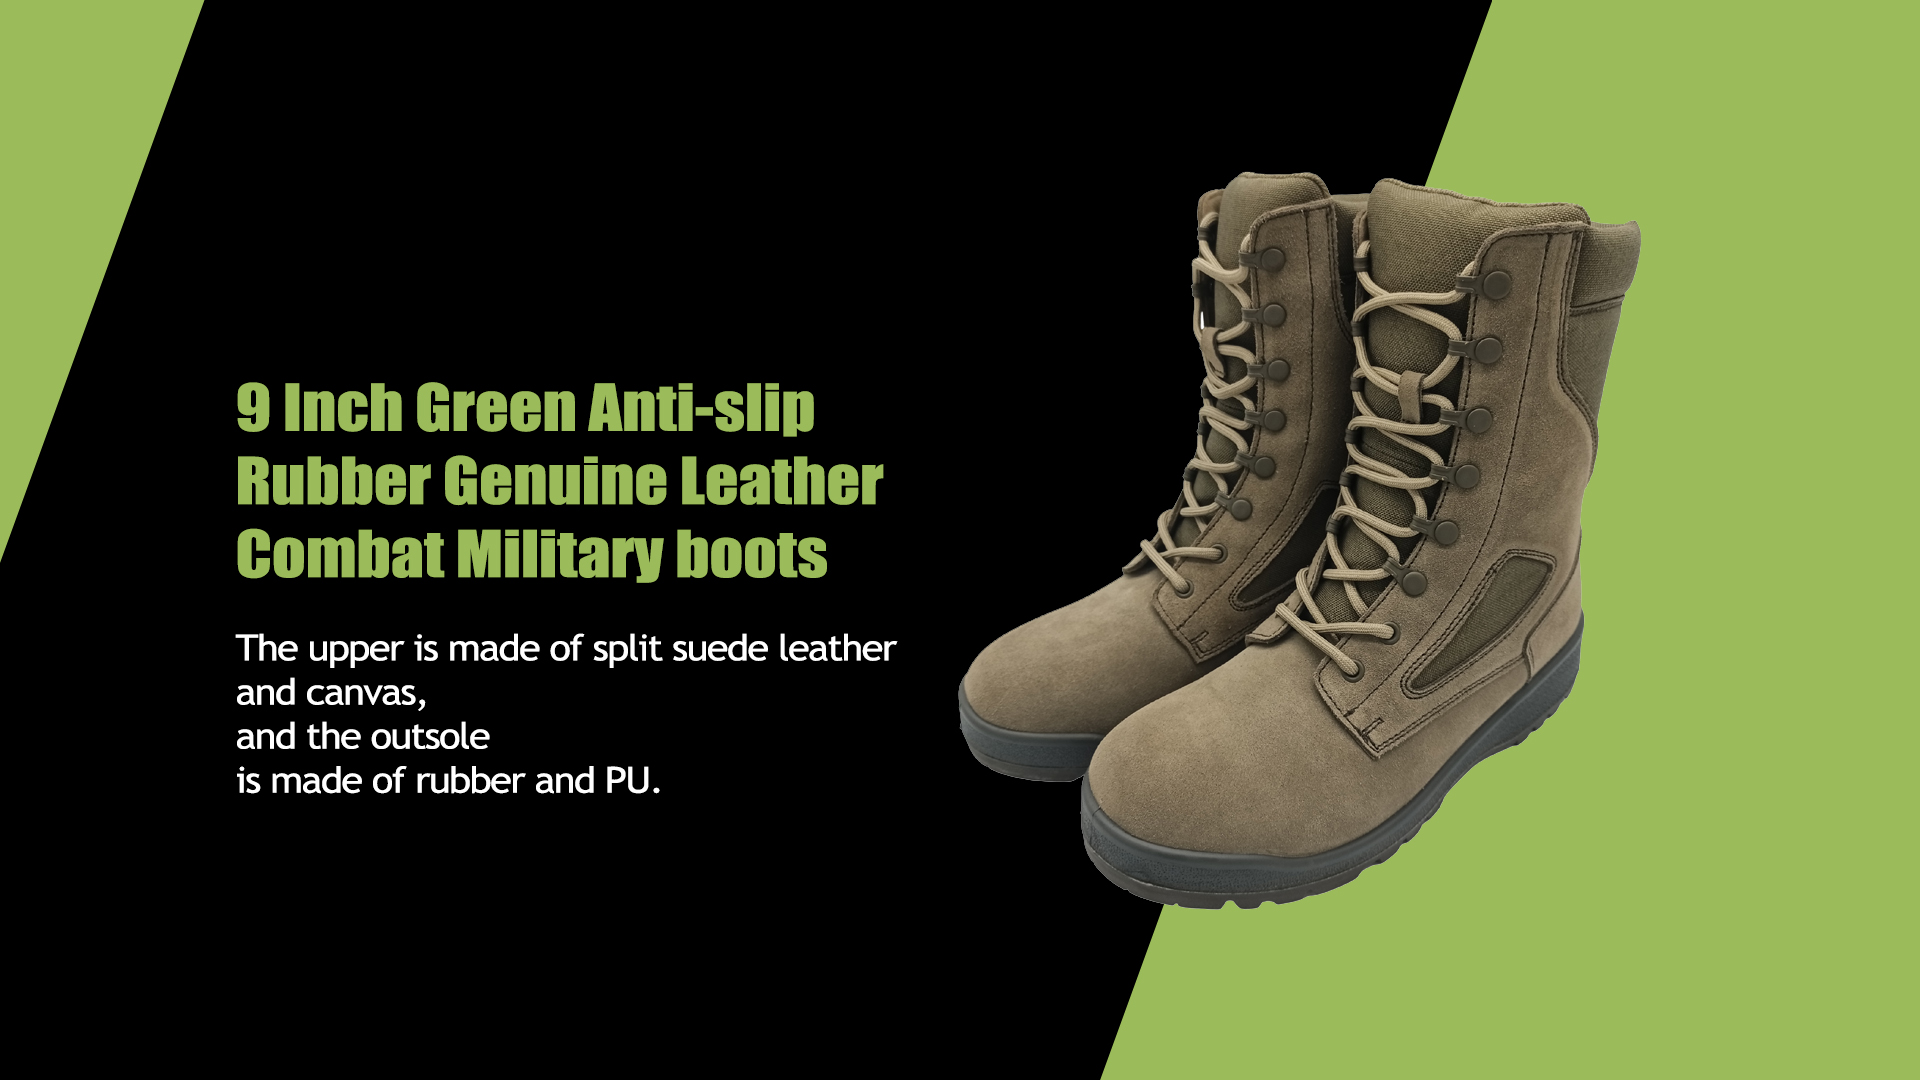 9 inch groene antislip rubberen lederen gevechtslaarzen voor militairen